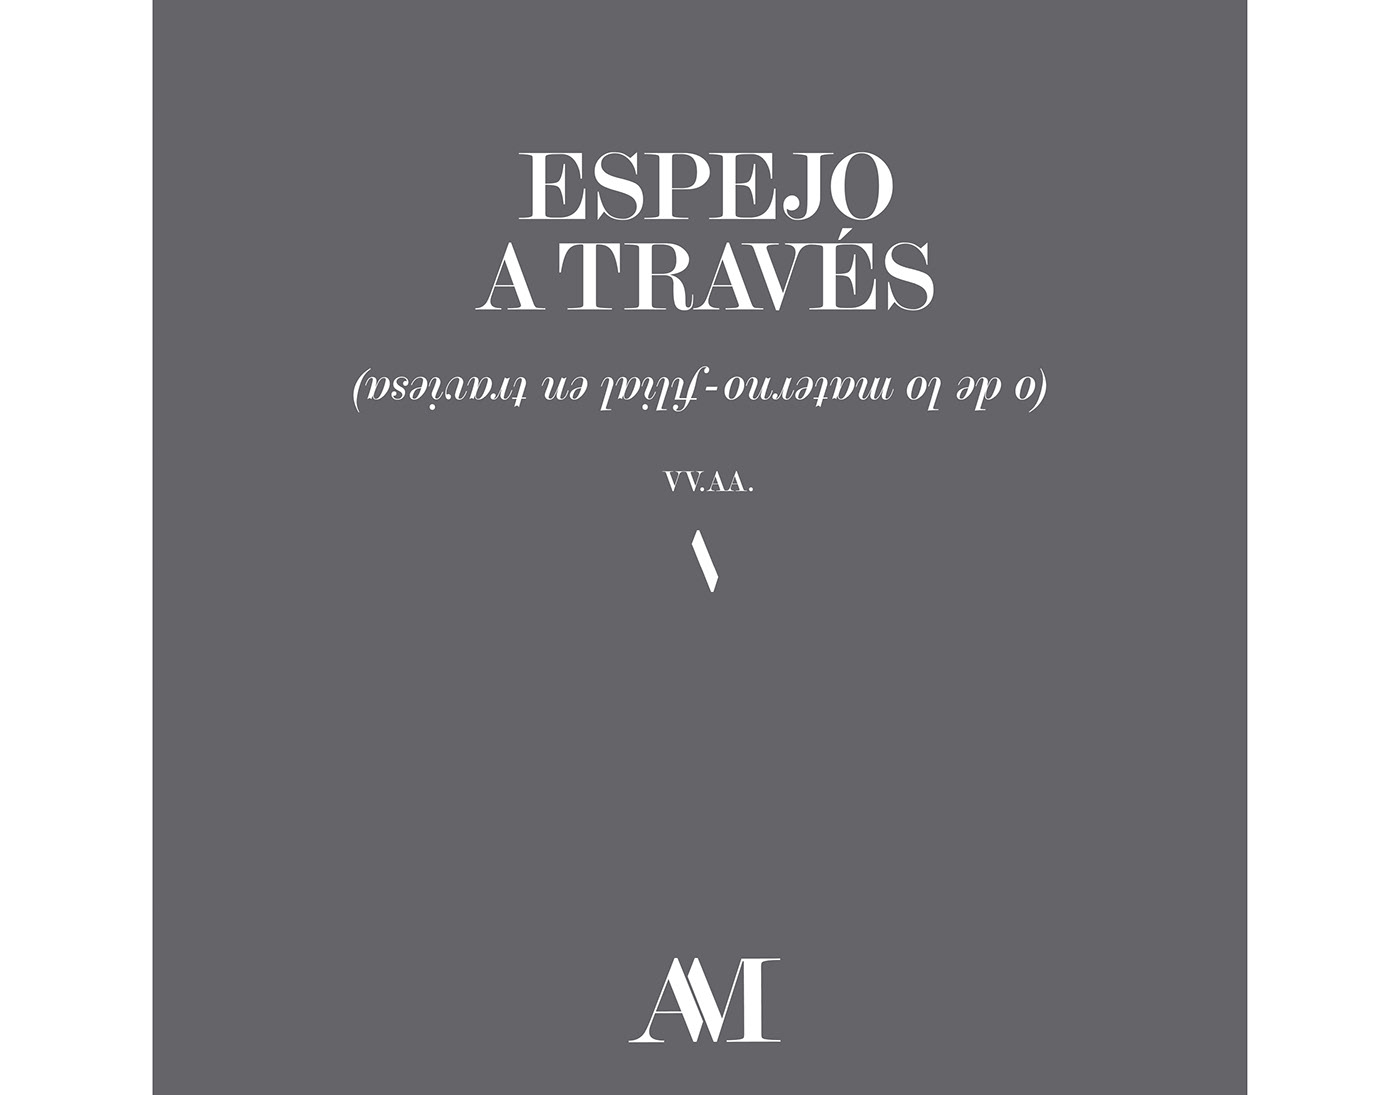 Mujeres arte artistas escritoras igualdad canarias edición editorial Artemisia Gentileschi